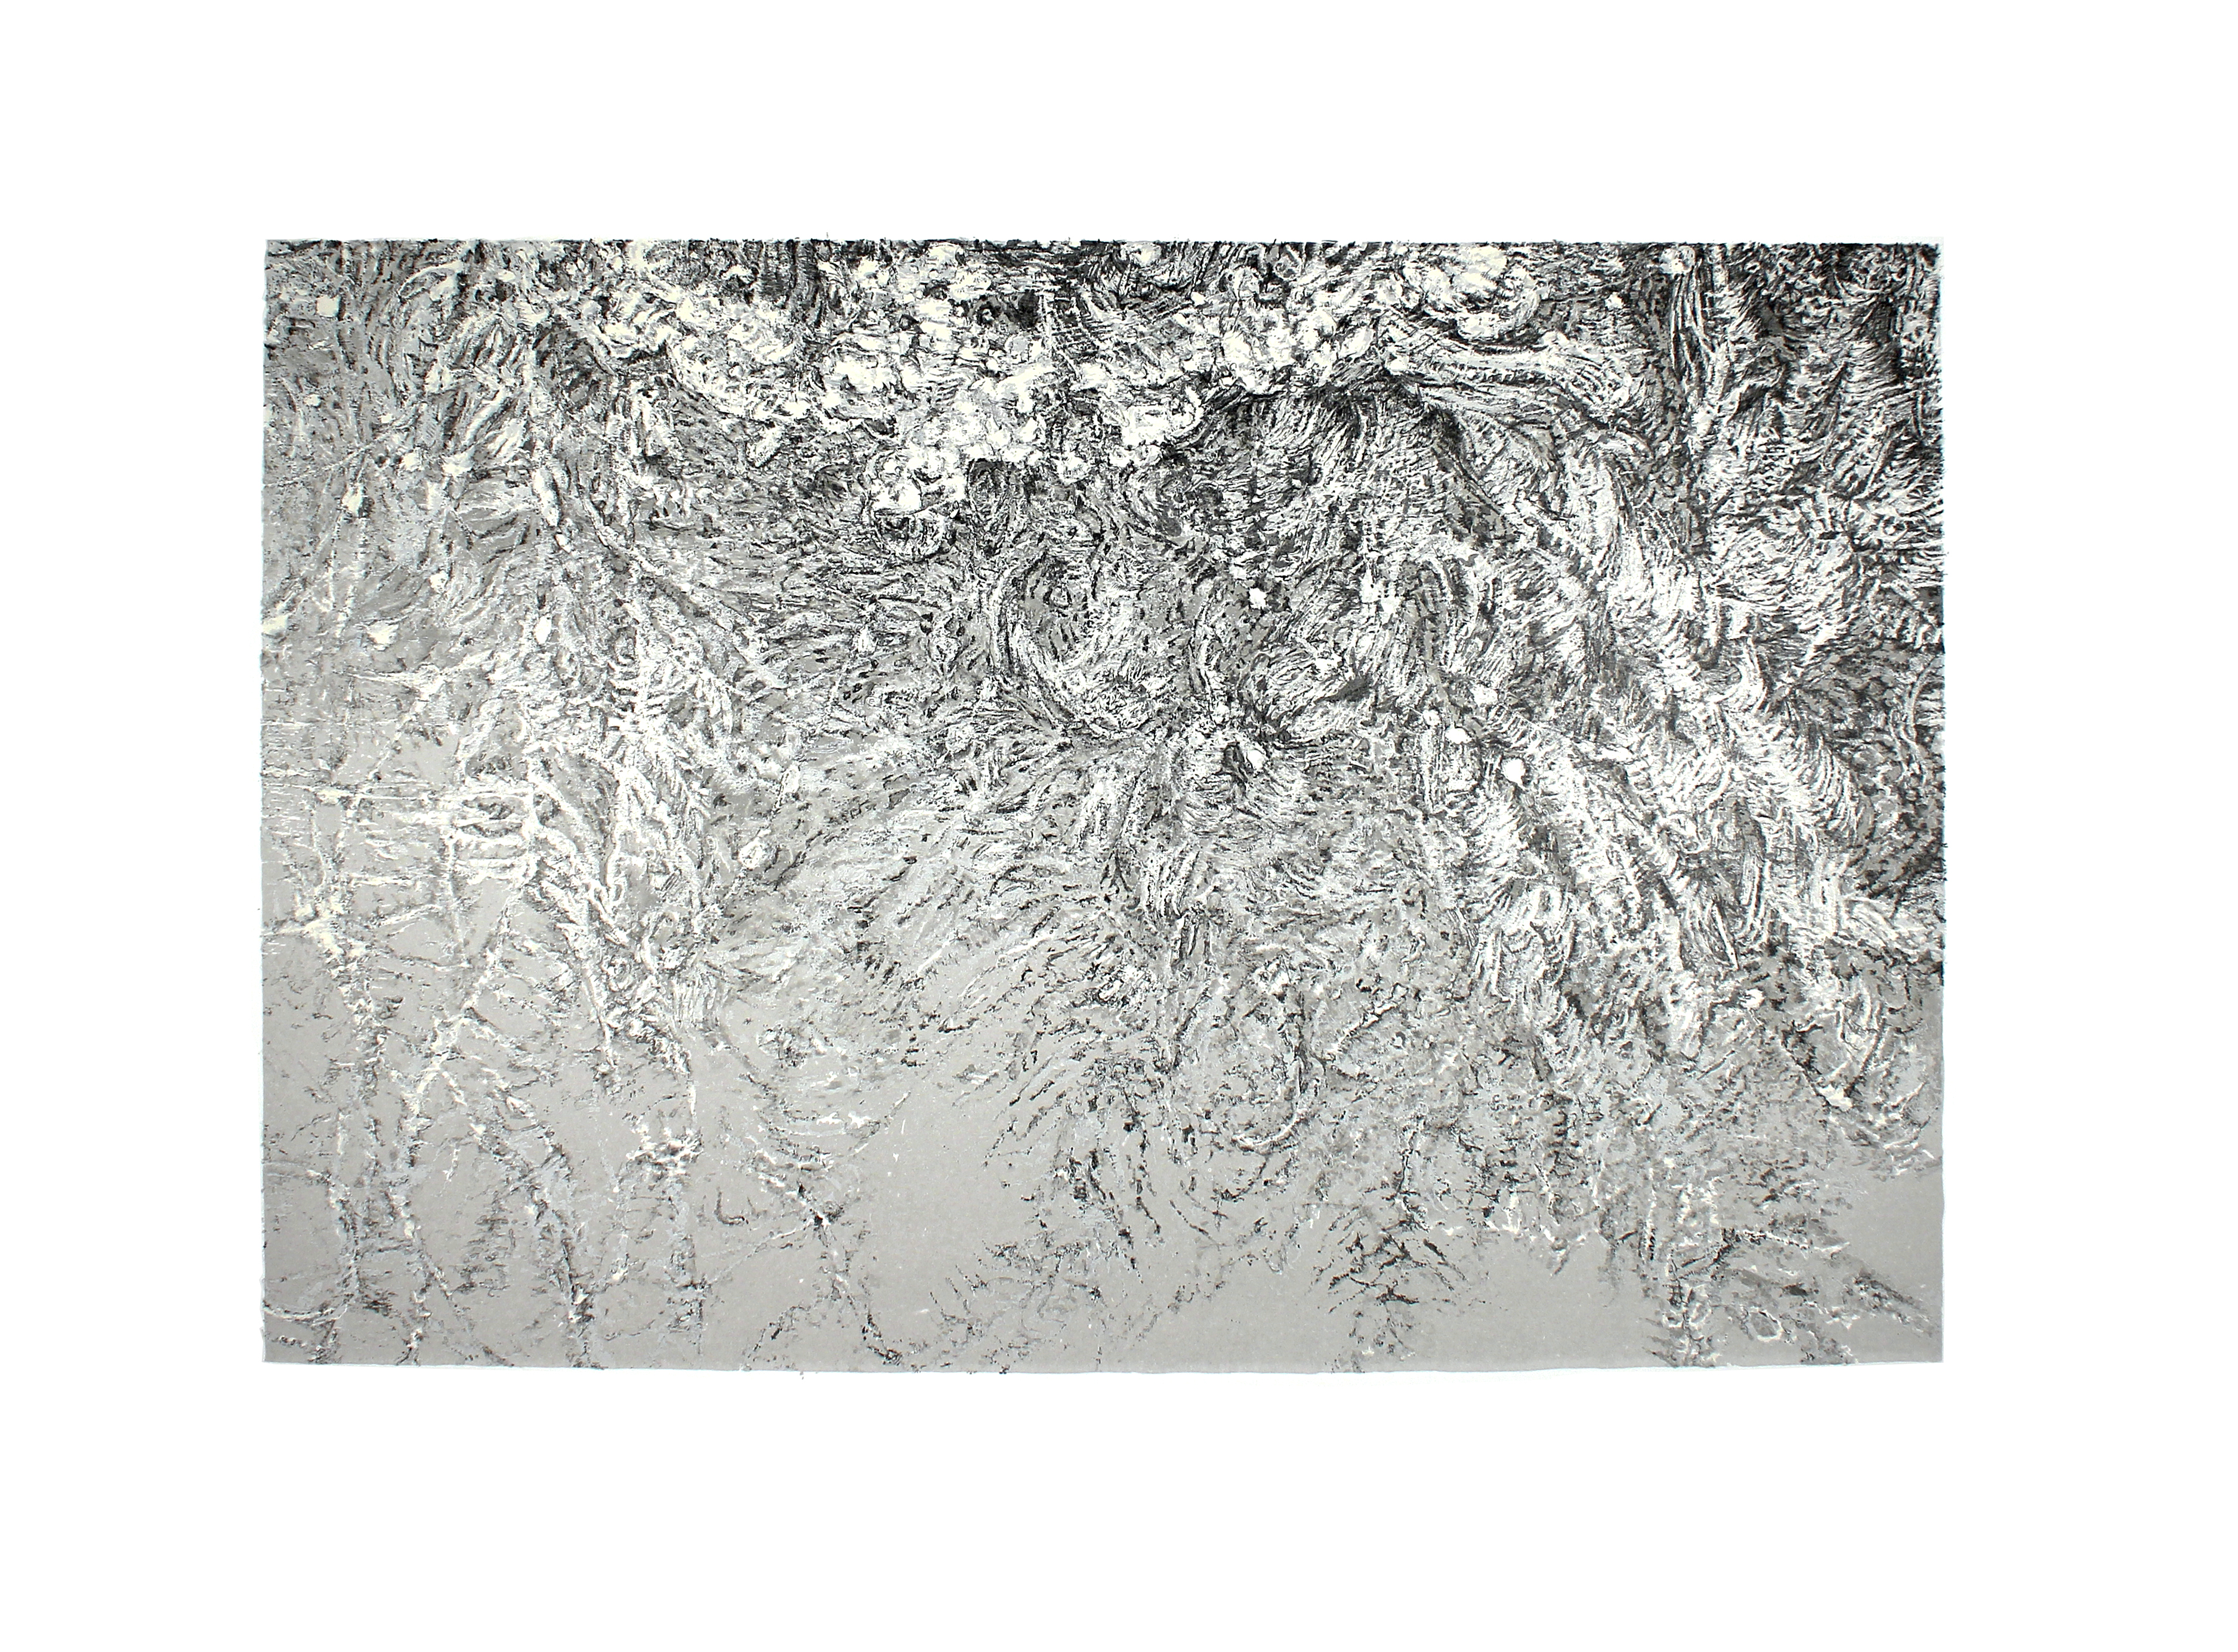 seven layer graphite lithograph, 12 x 18 inches, 2015